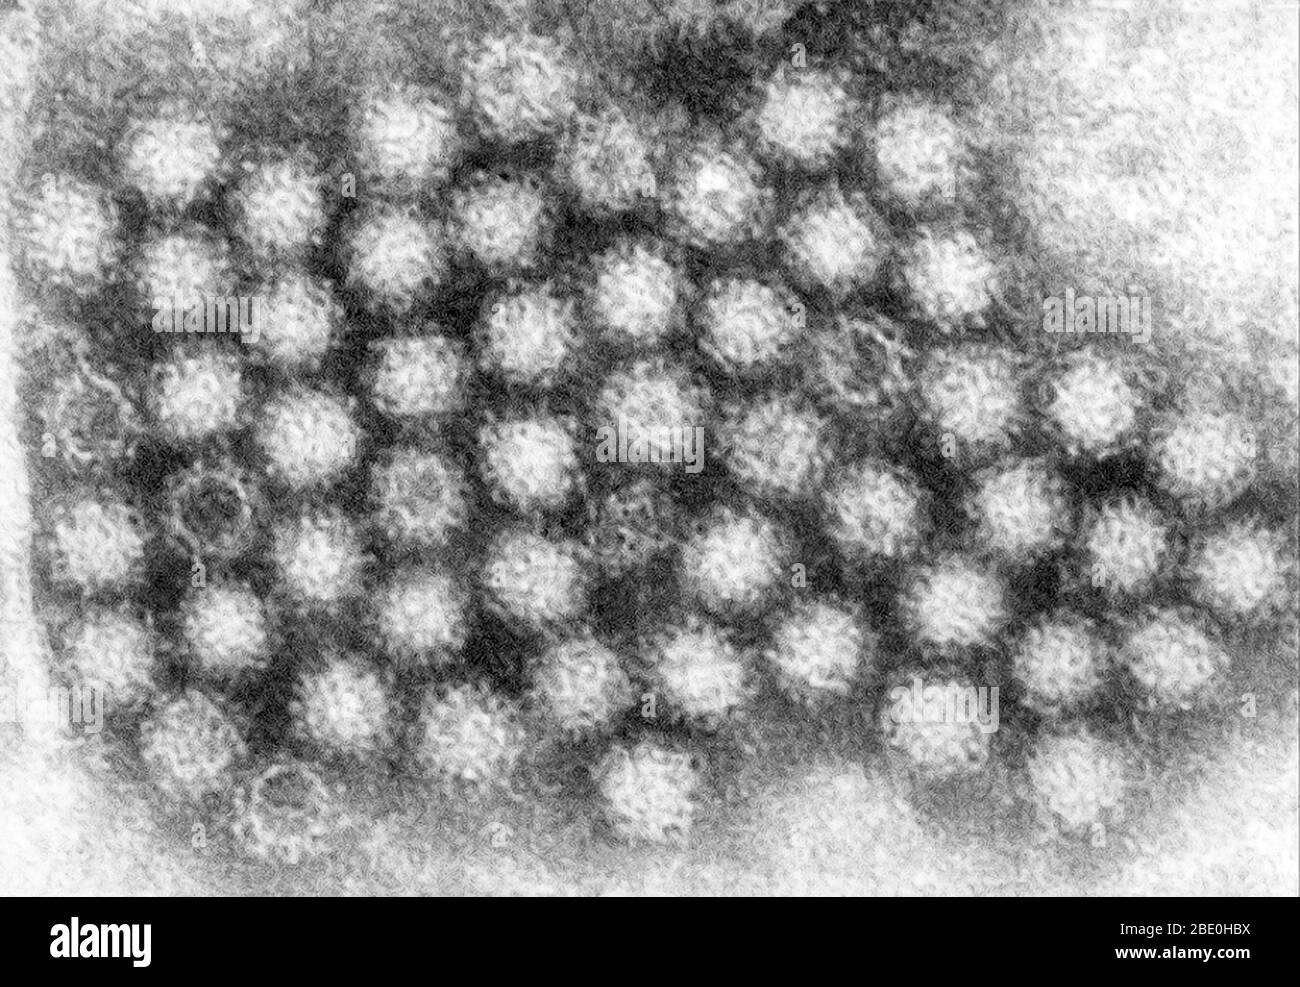 Dieser Transmissionselektronenmikrograph (TEM) zeigte einige der ultrastrukturellen Morphologie, die von Norovirus-Virionen oder Viruspartikeln dargestellt wurde. Noroviren gehören zur Gattung Norovirus und zur Familie Caliciviridae. Sie sind eine Gruppe von verwandten, einsträngigen RNA, unbehüllten Viren, die akute Gastroenteritis beim Menschen verursachen. Norovirus wurde kürzlich als offizieller Genus-Name für die Gruppe der Viren zugelassen, die vorläufig als Norwalk-like Virus (NLV) beschrieben werden. Stockfoto